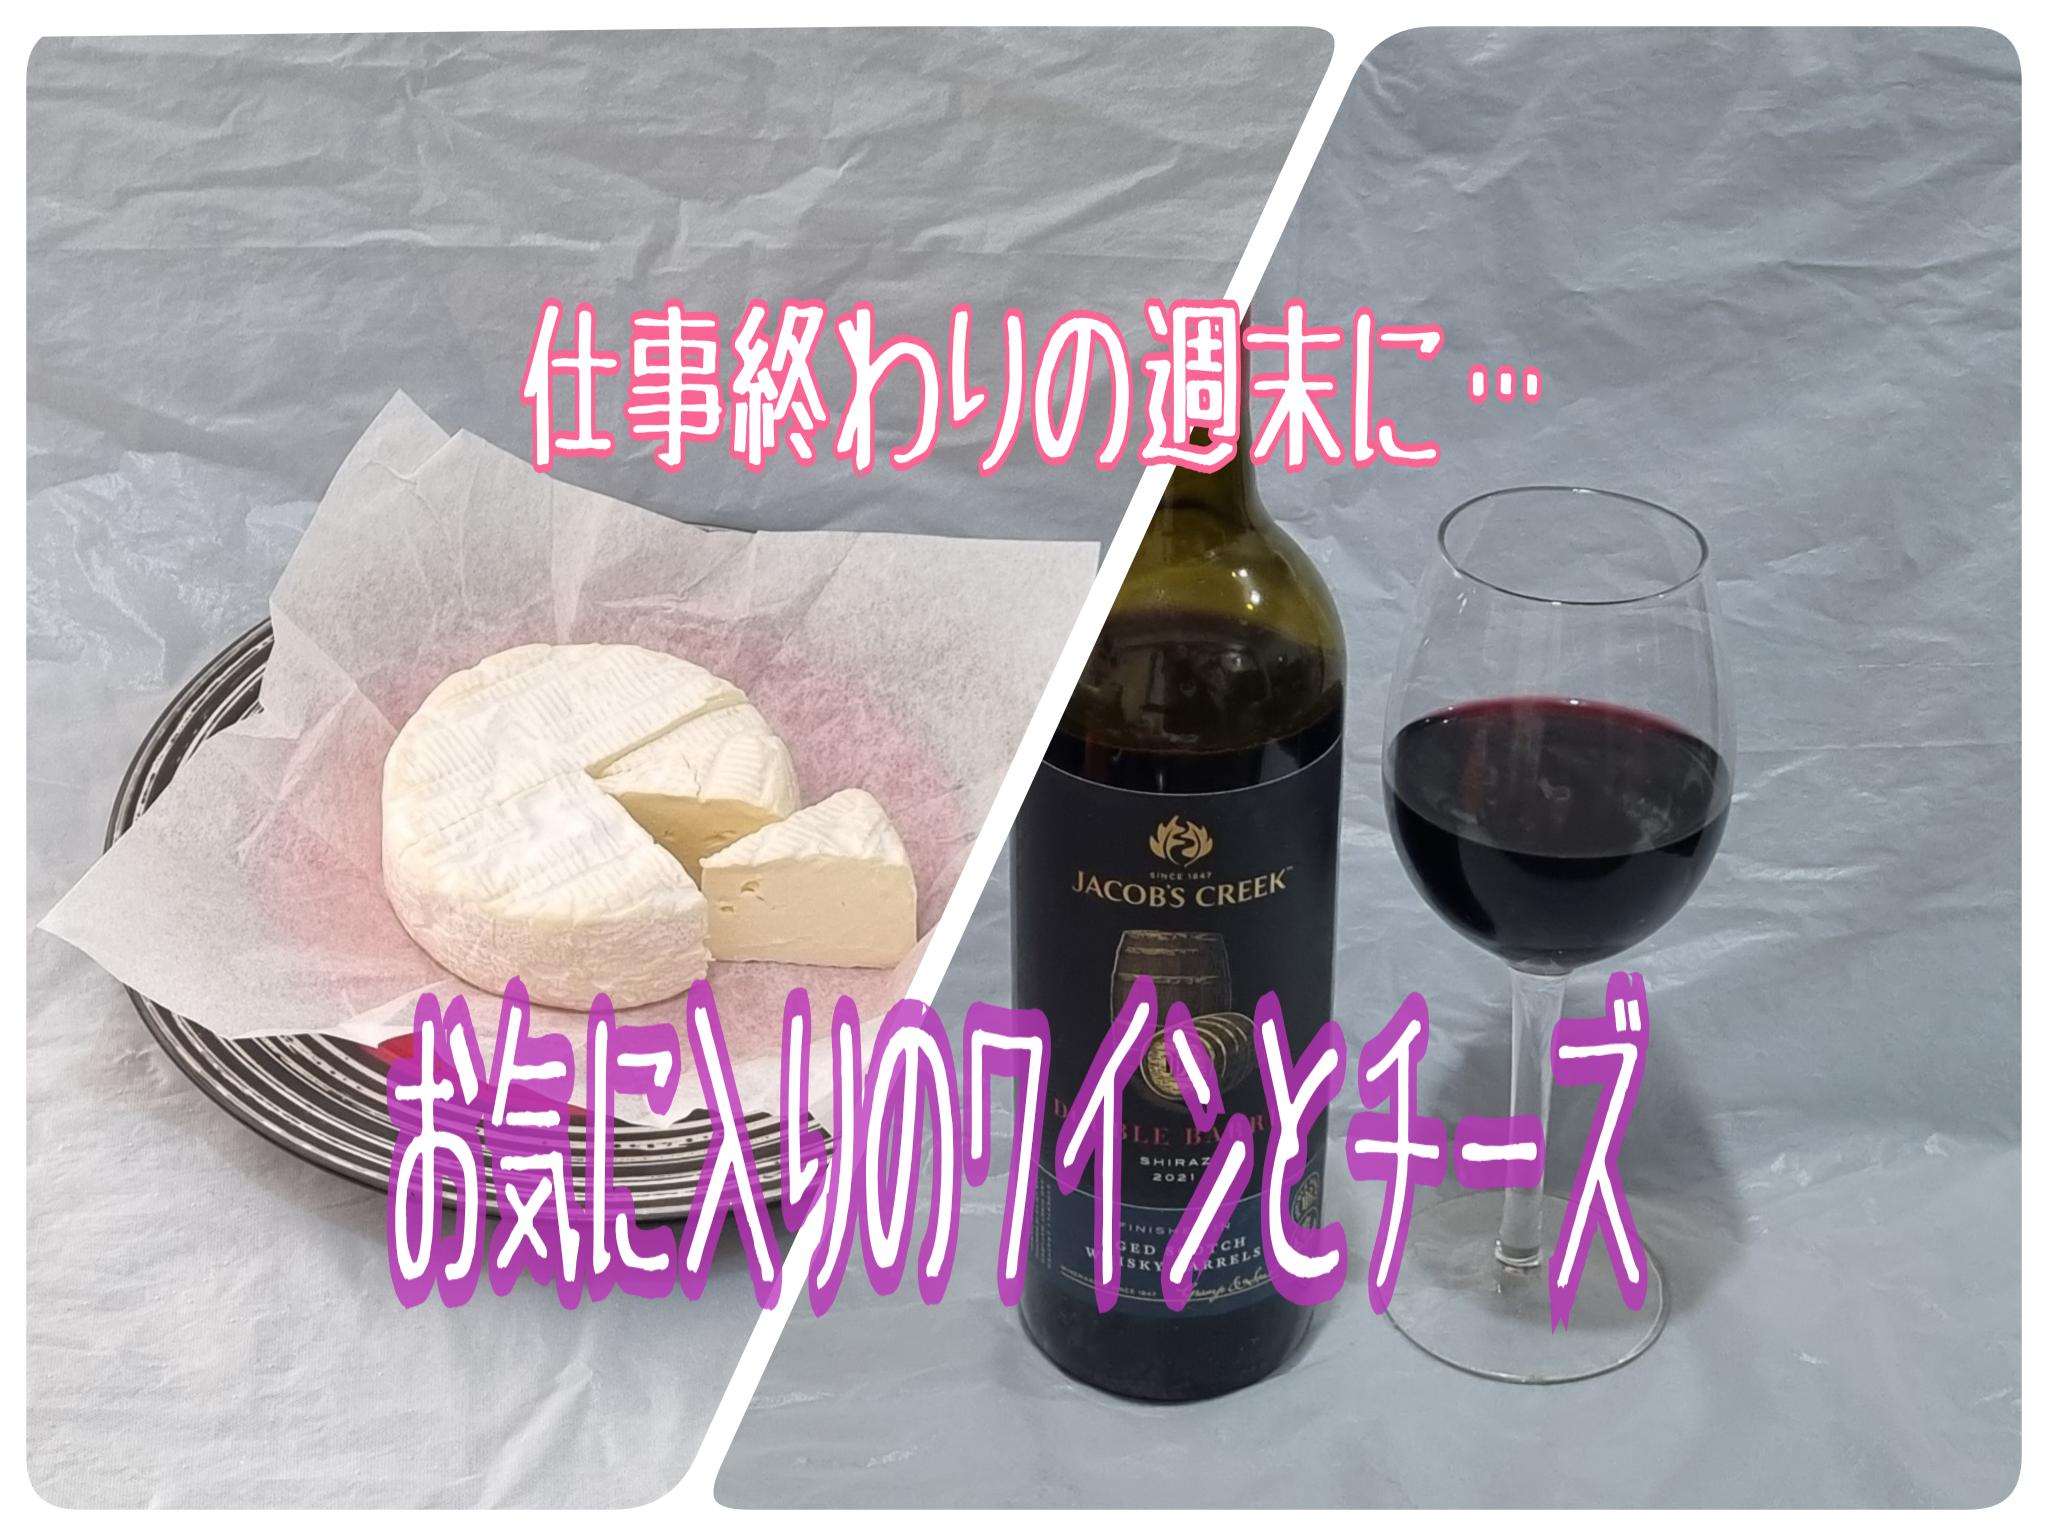 【ワイン】仕事終わりをお気に入りのワインとチーズで過ごす四十路女の日常【ニュージーランド】